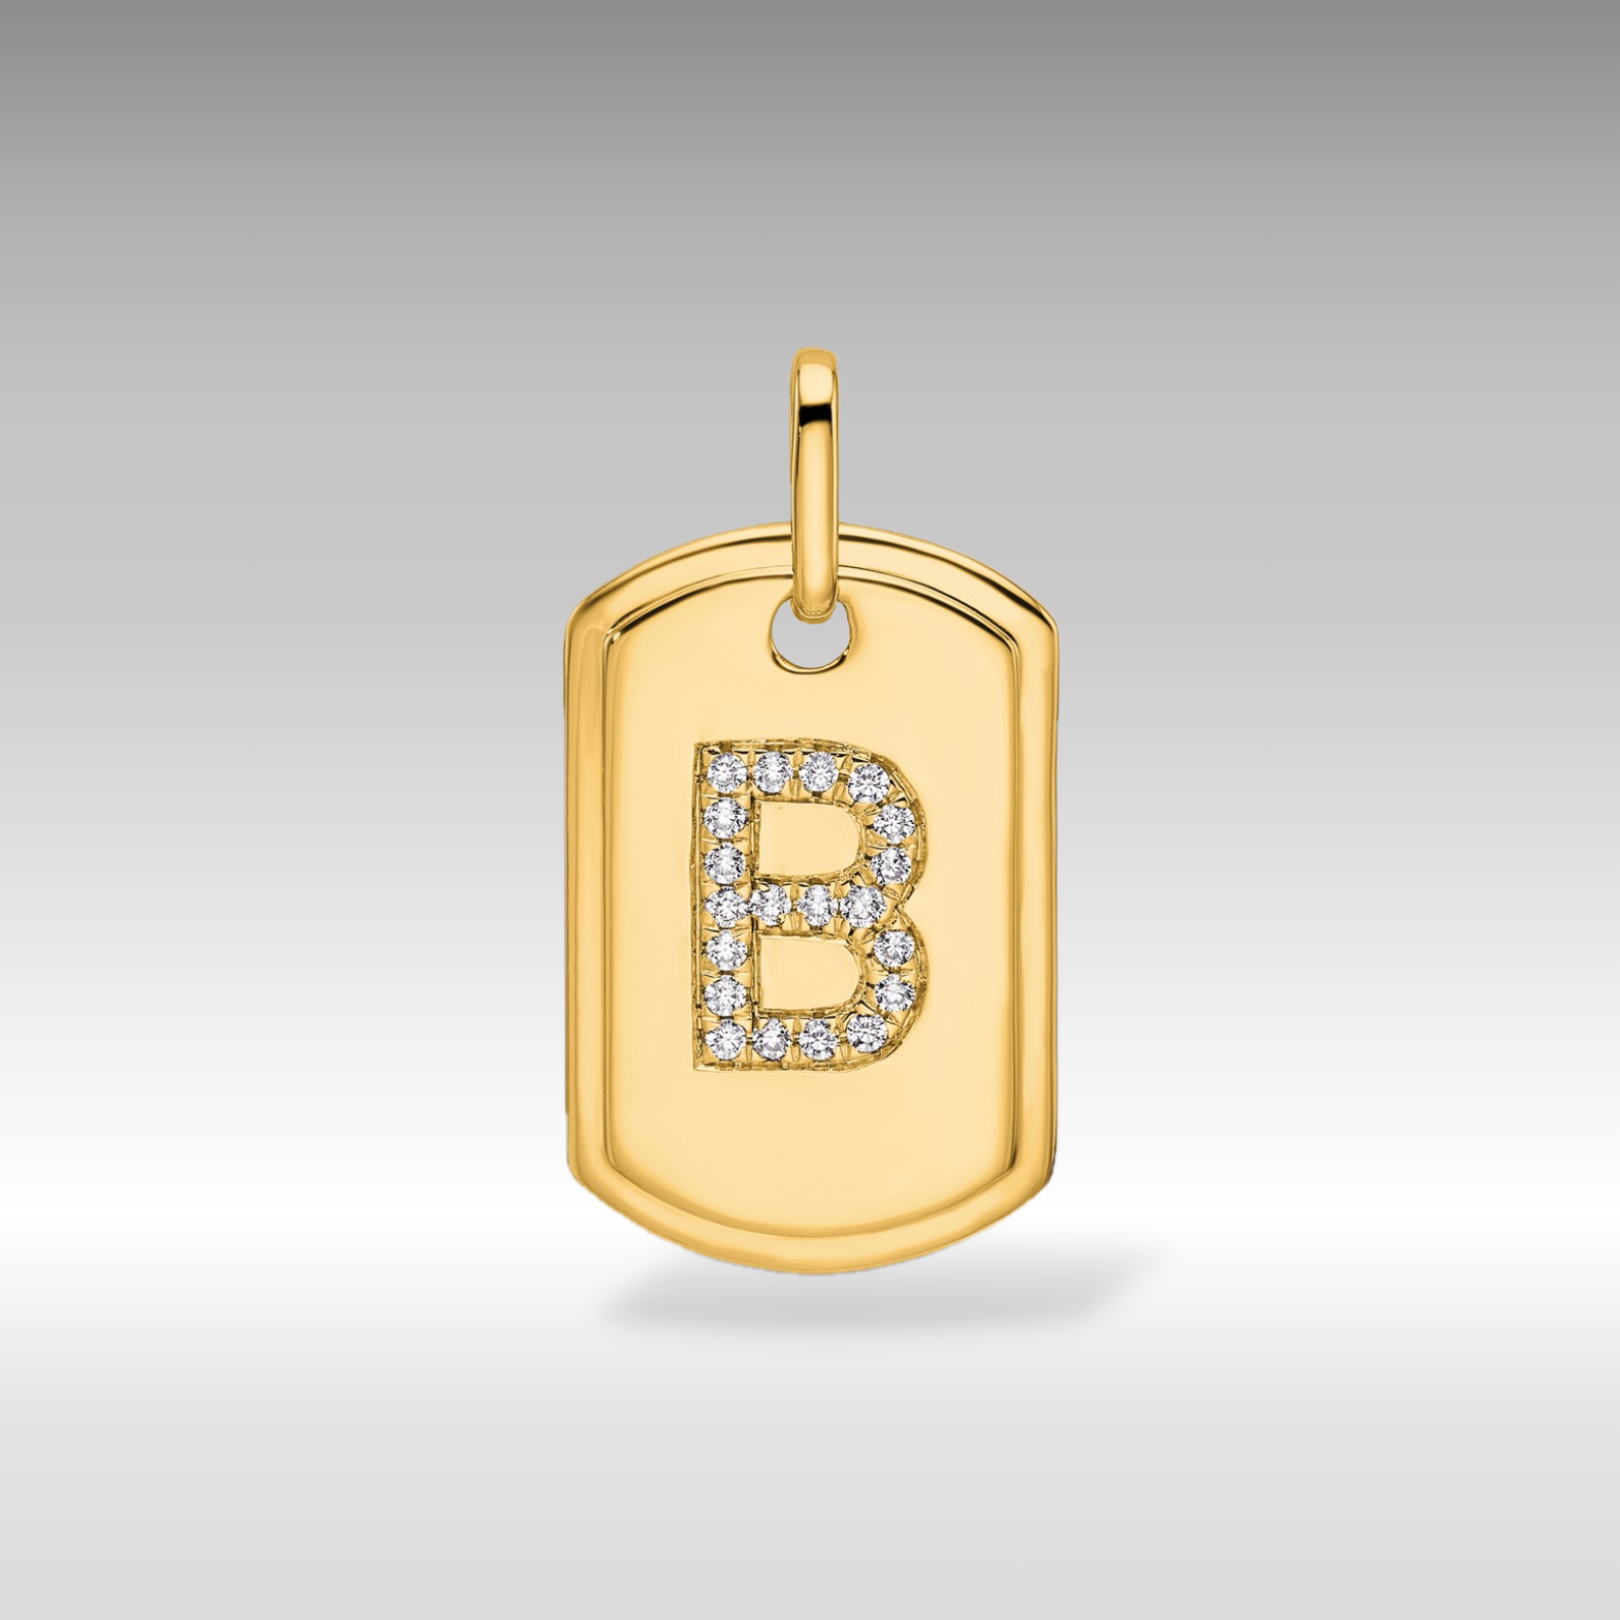 14K Gold Initial "B" Dog Tag With Genuine Diamonds - Charlie & Co. Jewelry